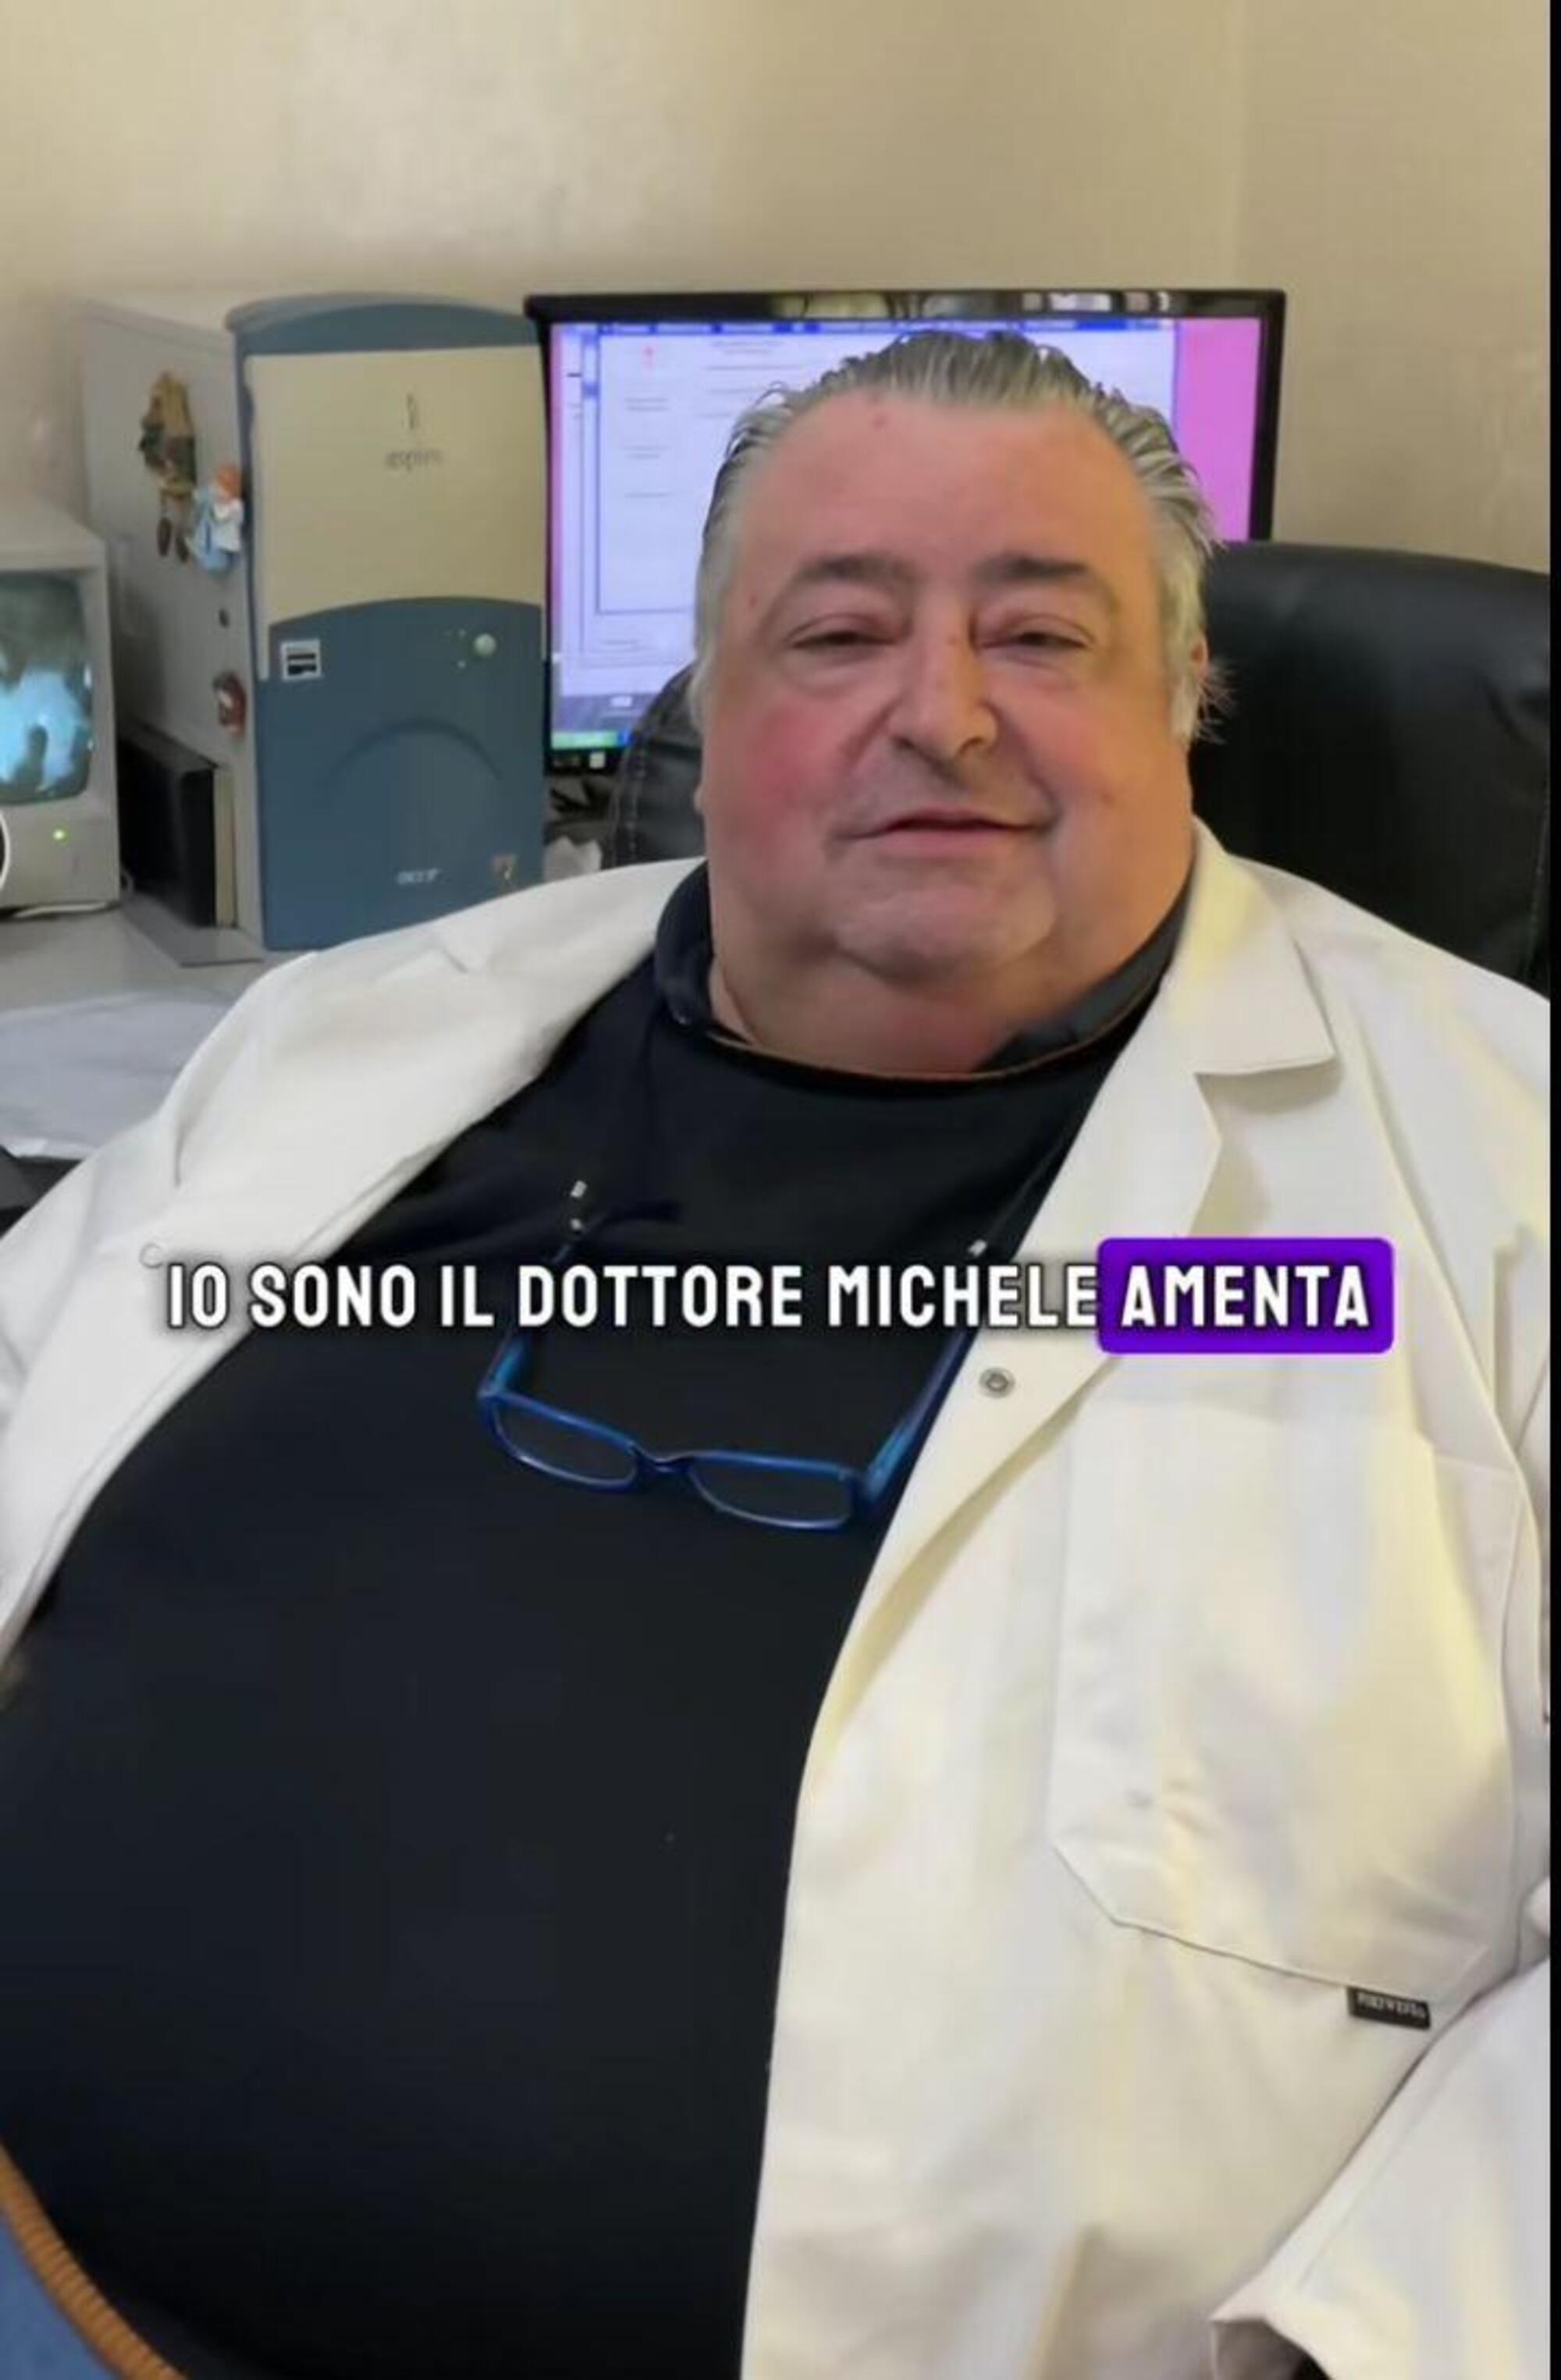 Il dottor Michele Amenta, dietologo e influencer 